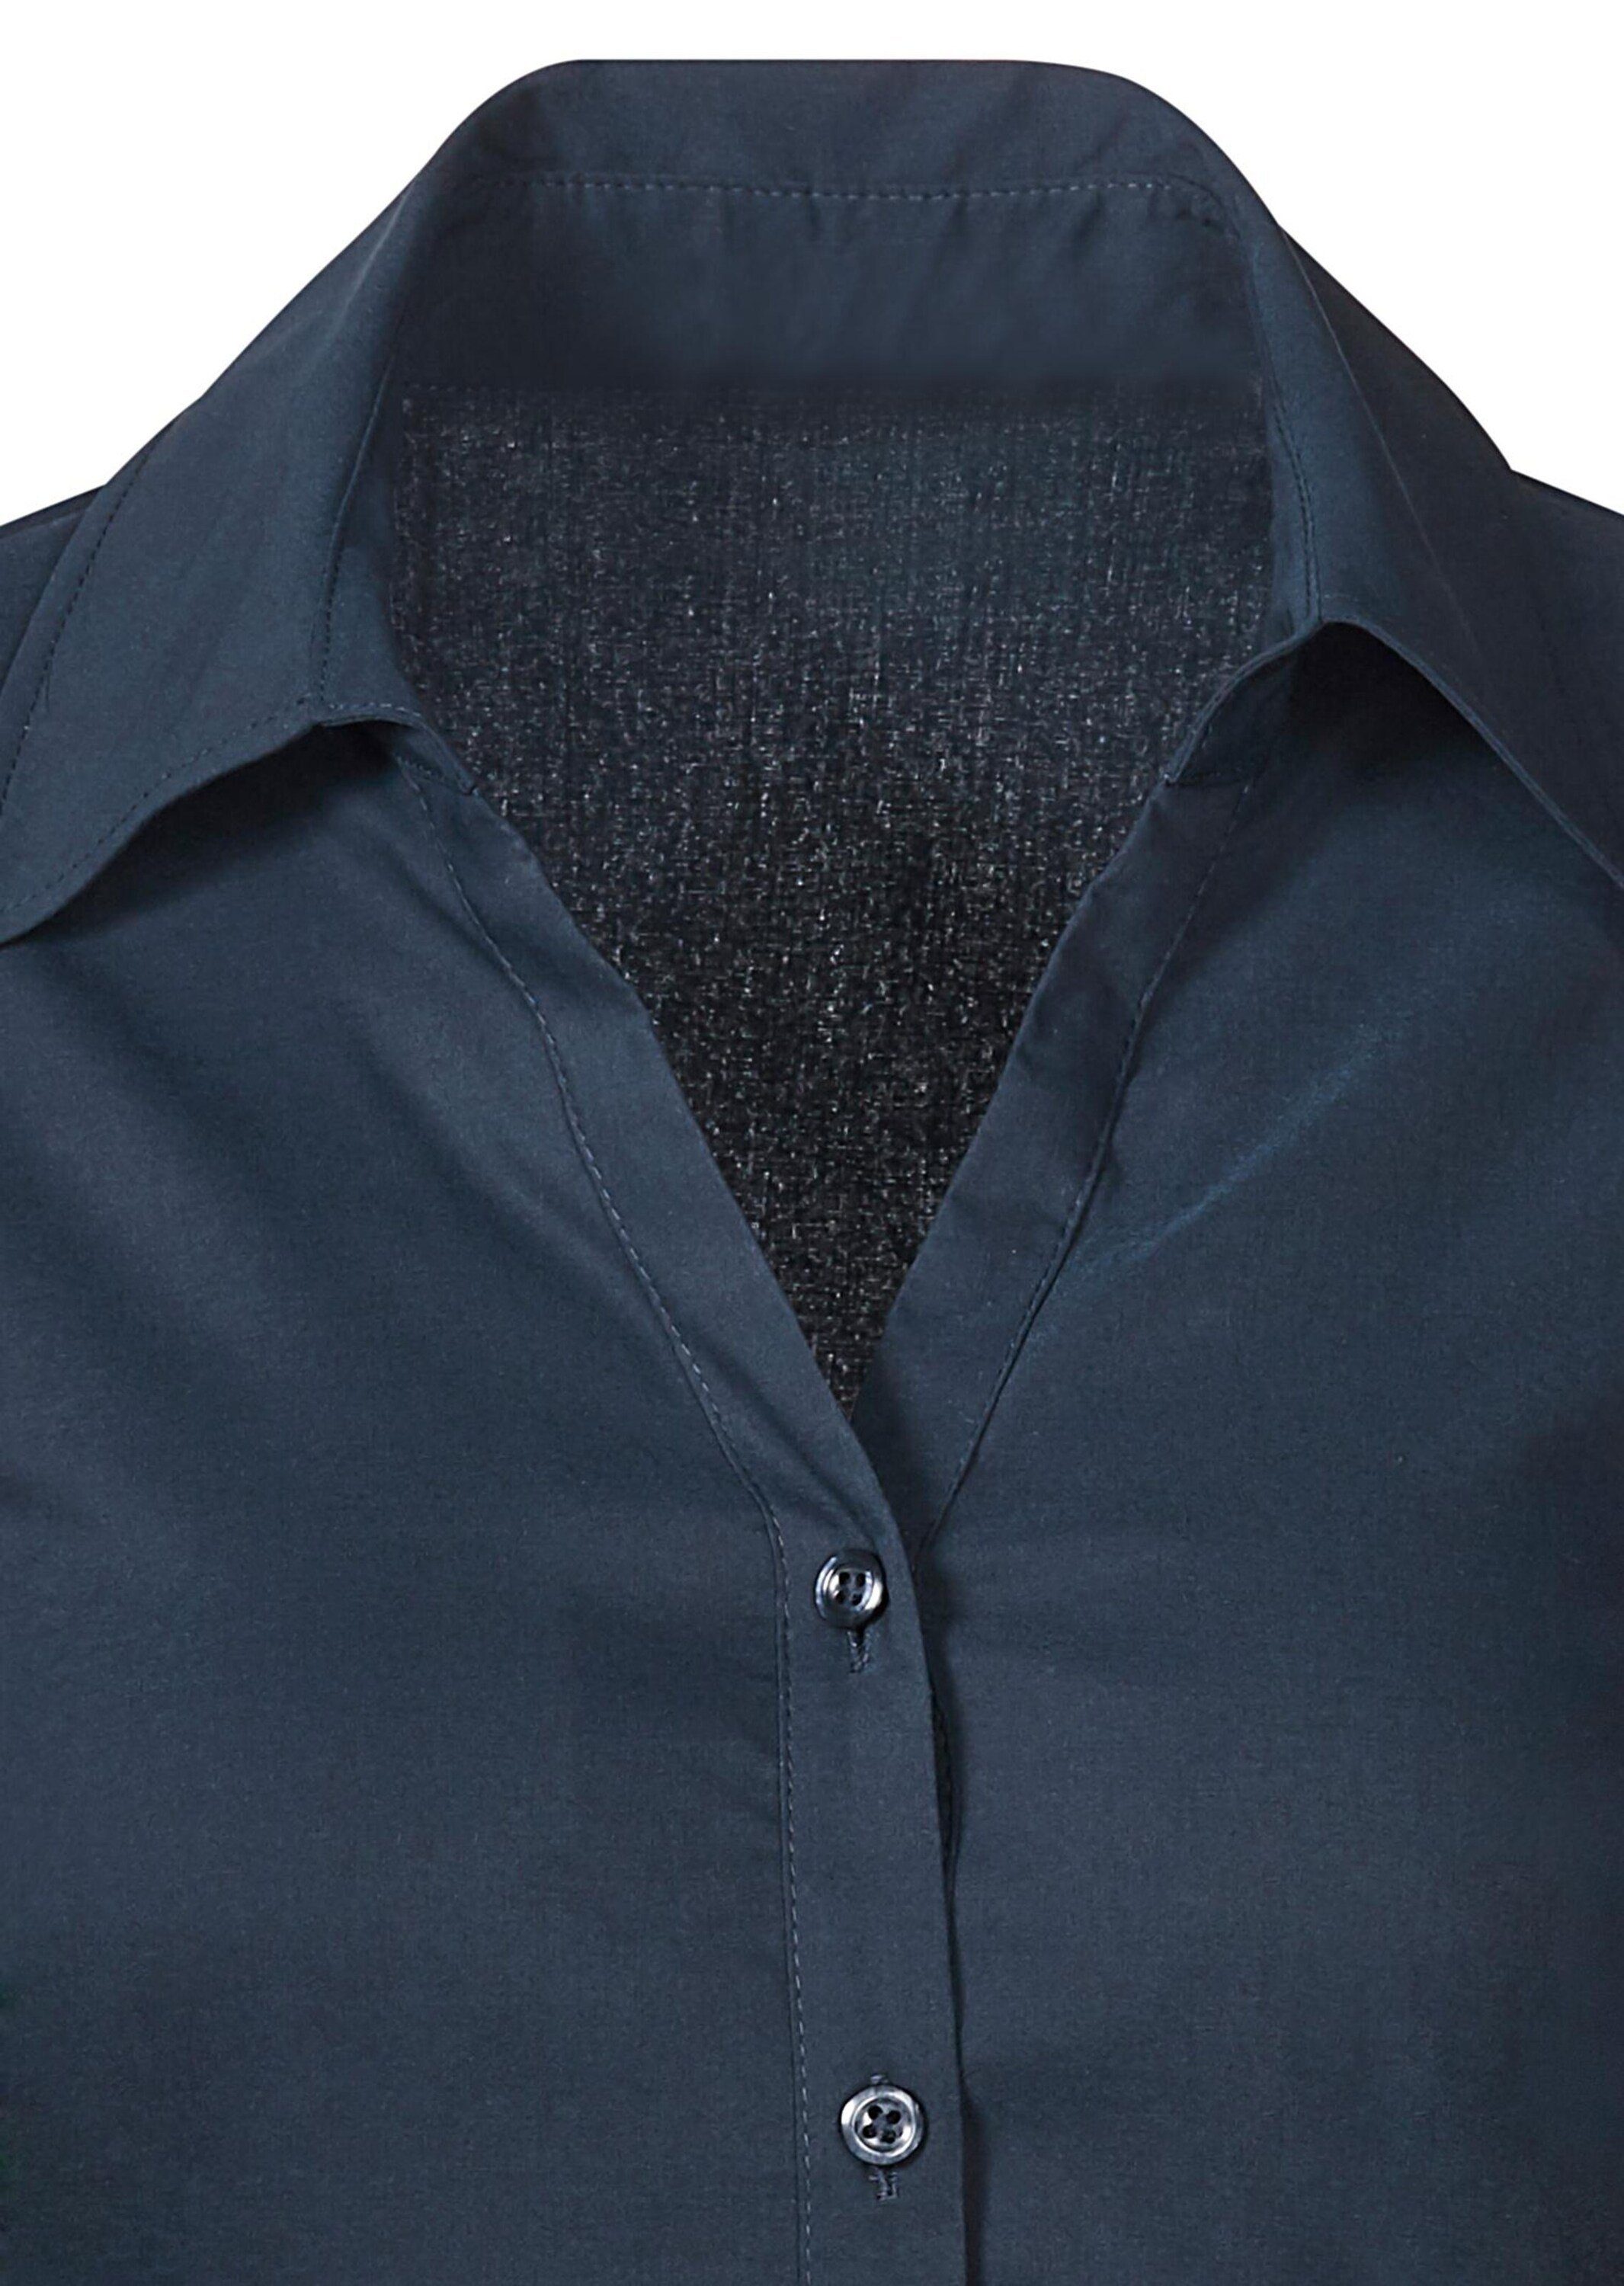 Bluse mit Stretchbequeme marine Hemdbluse GOLDNER Baumwolle Kurzgröße: